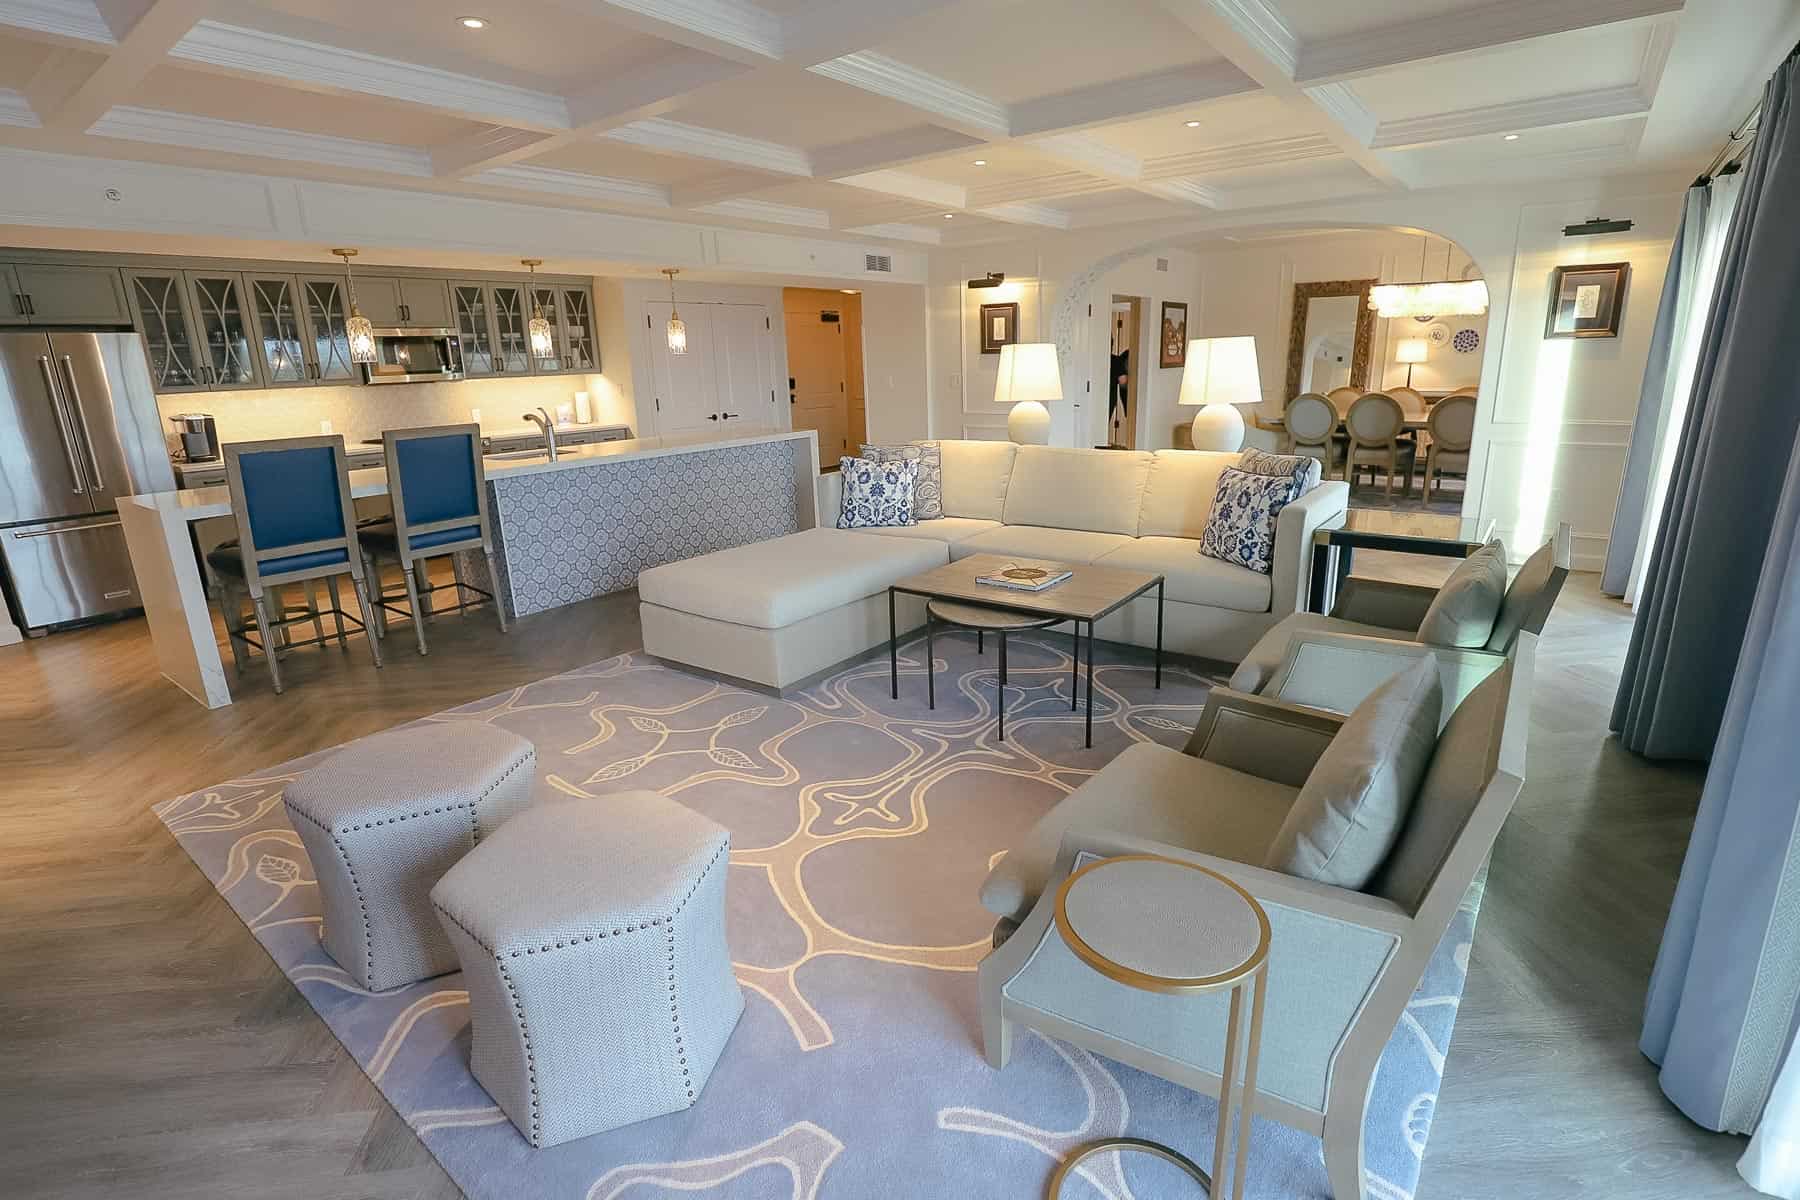 Living room of the three-bedroom grand villa at Disney's Riviera Resort